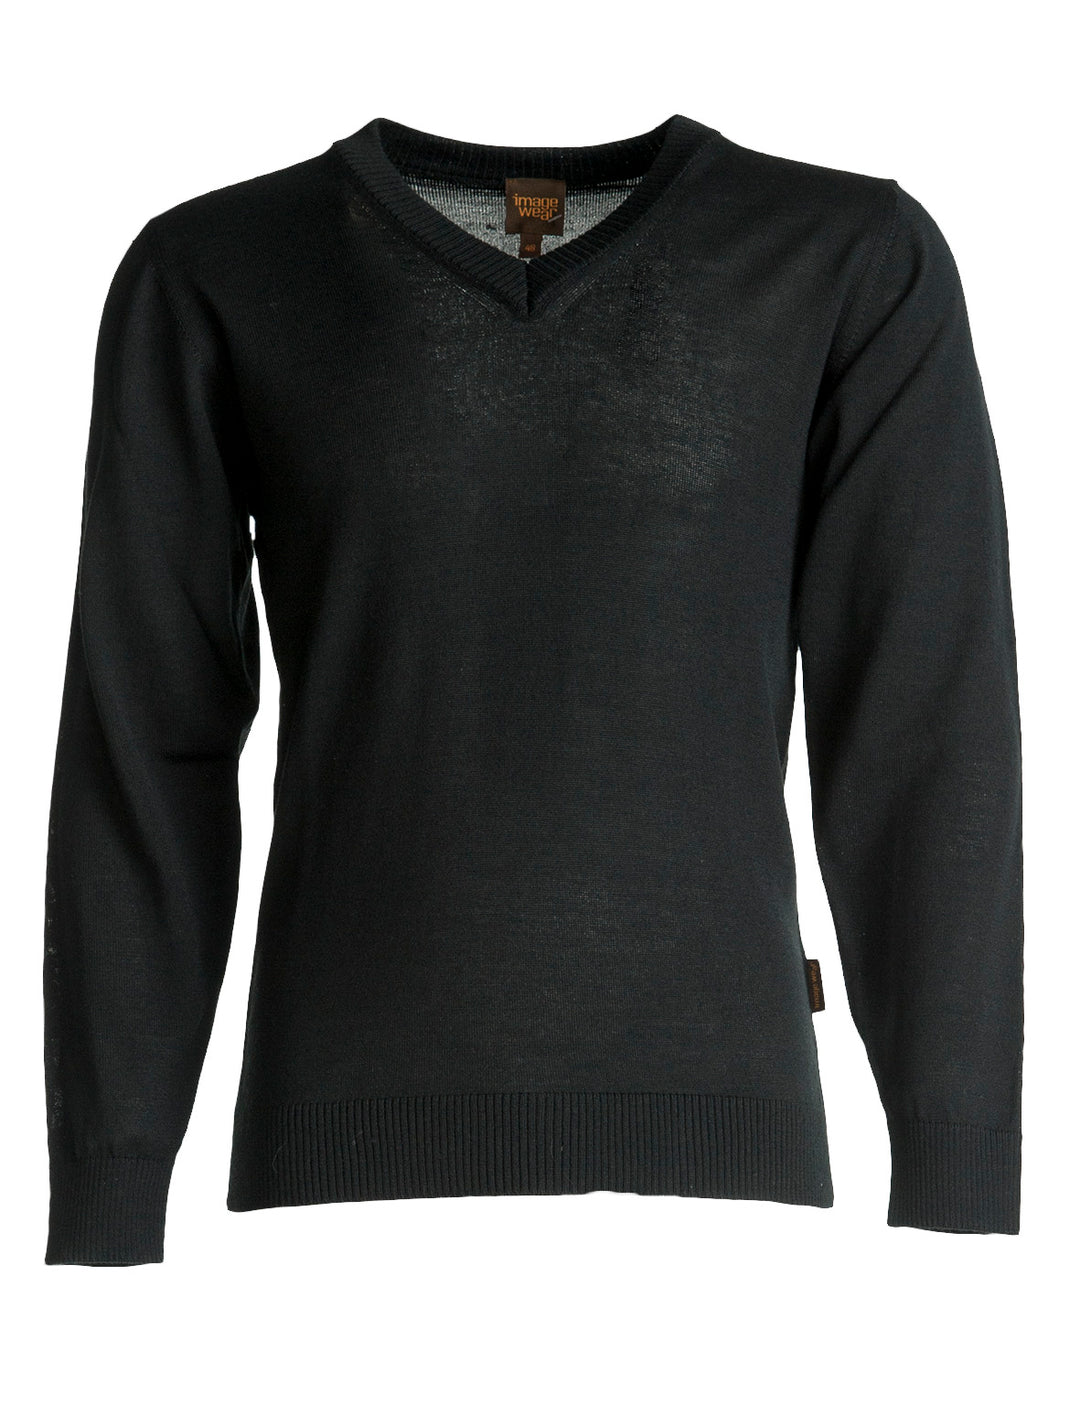 V-aukollinen musta neulepusero sopii hyvin puettavaksi t-paidan tai kauluspaidan päälle. Pitää lämpimänä, mutta samalla myös hengittää. Materiaali miellyttävää villasekoitetta. 